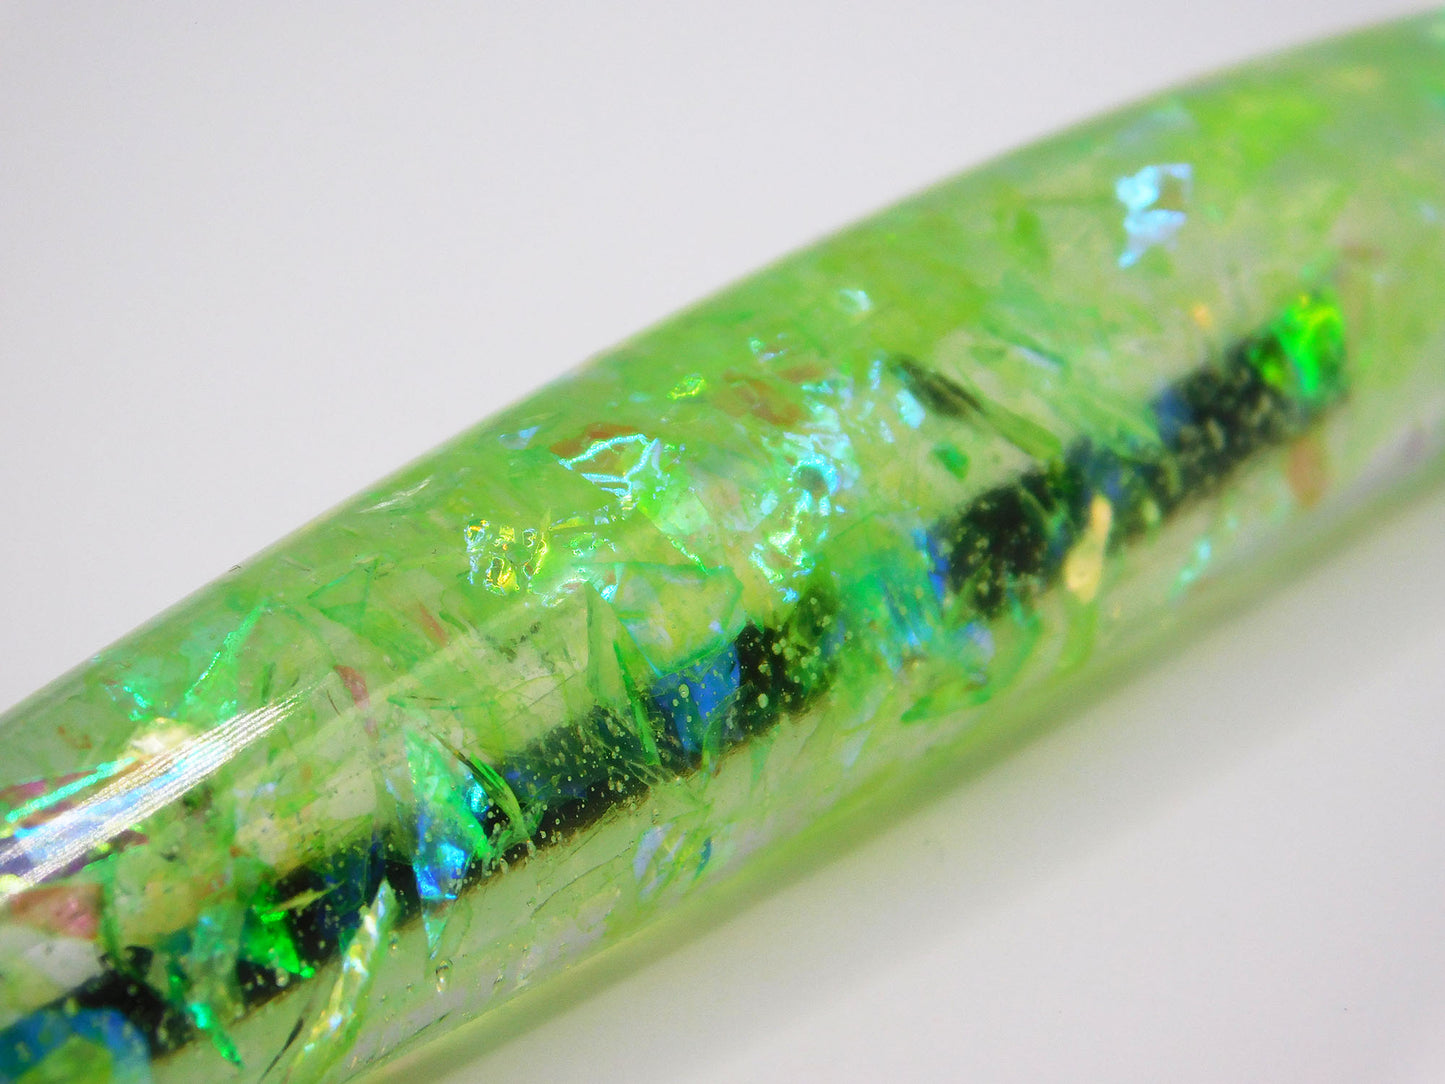 Handmade Resin Pens - Holographic Shimmer